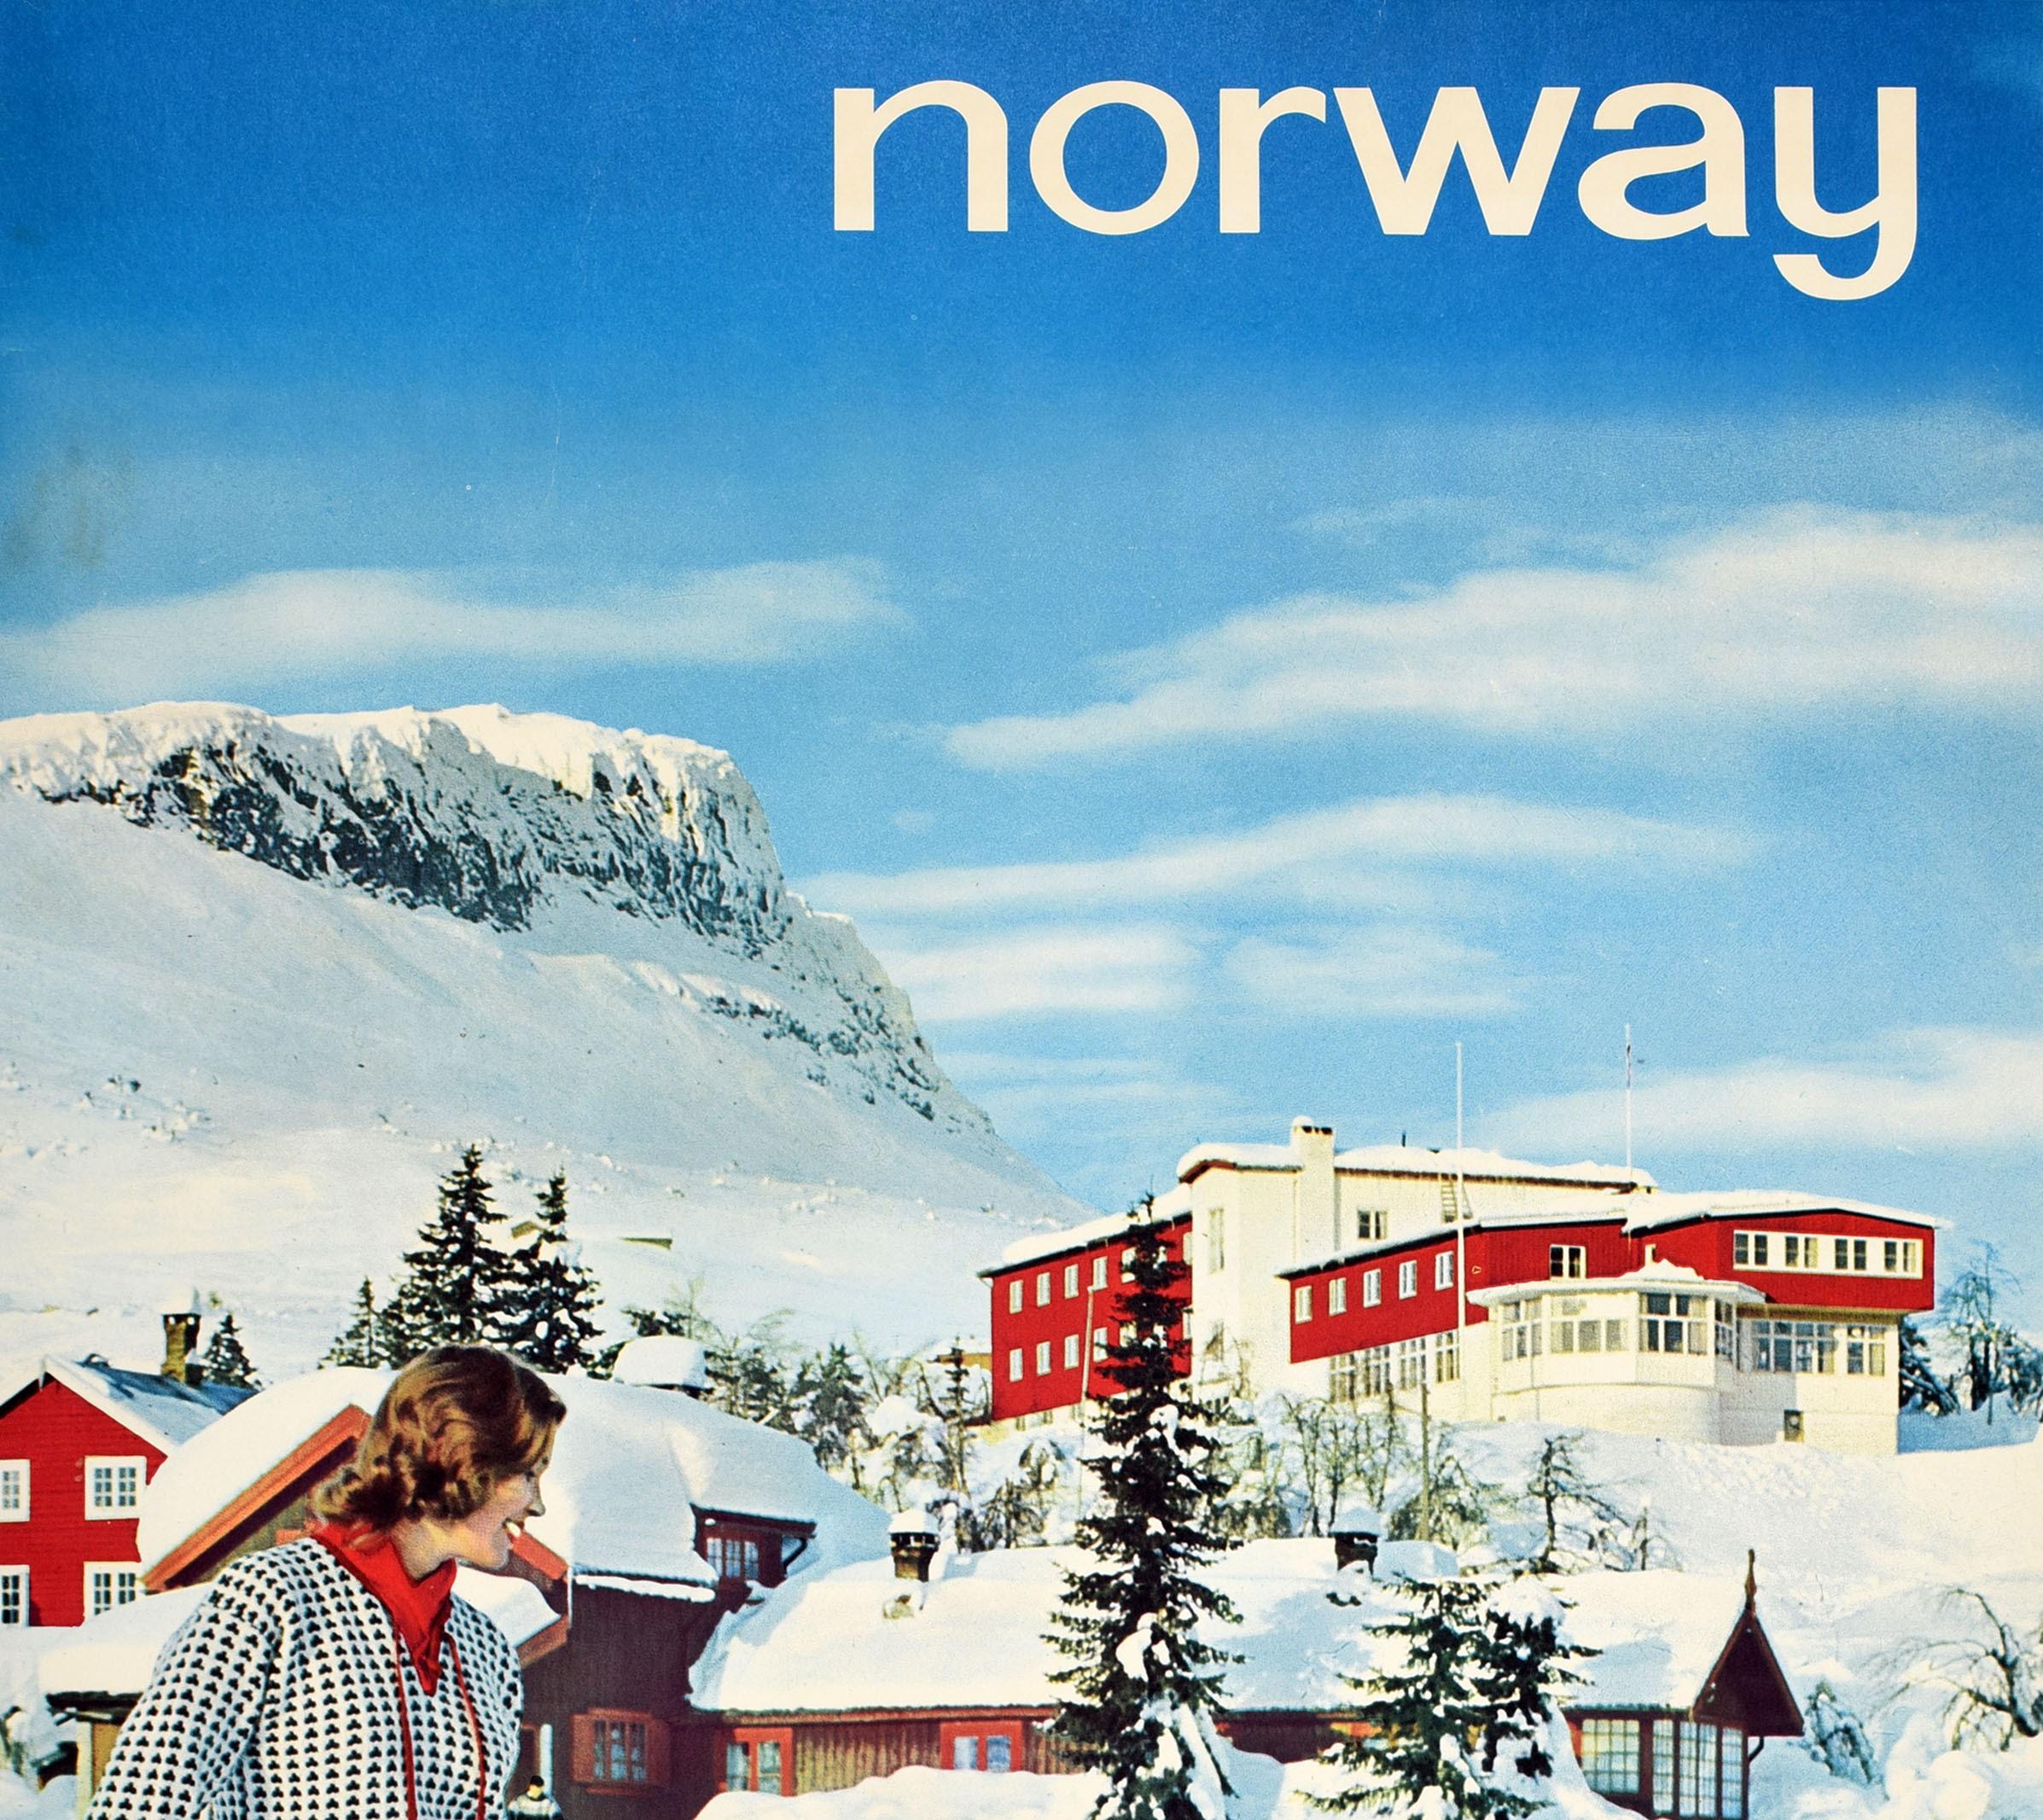 Original Vintage-Ski- und Wintersport-Reiseplakat für Norwegen mit einem Farbfoto von Arne With Normann (1911-1990) von zwei lächelnden Skifahrern in gemusterten Pullovern, die ihre Skier vor schneebedeckten Hüttengebäuden, Bäumen und Bergen im